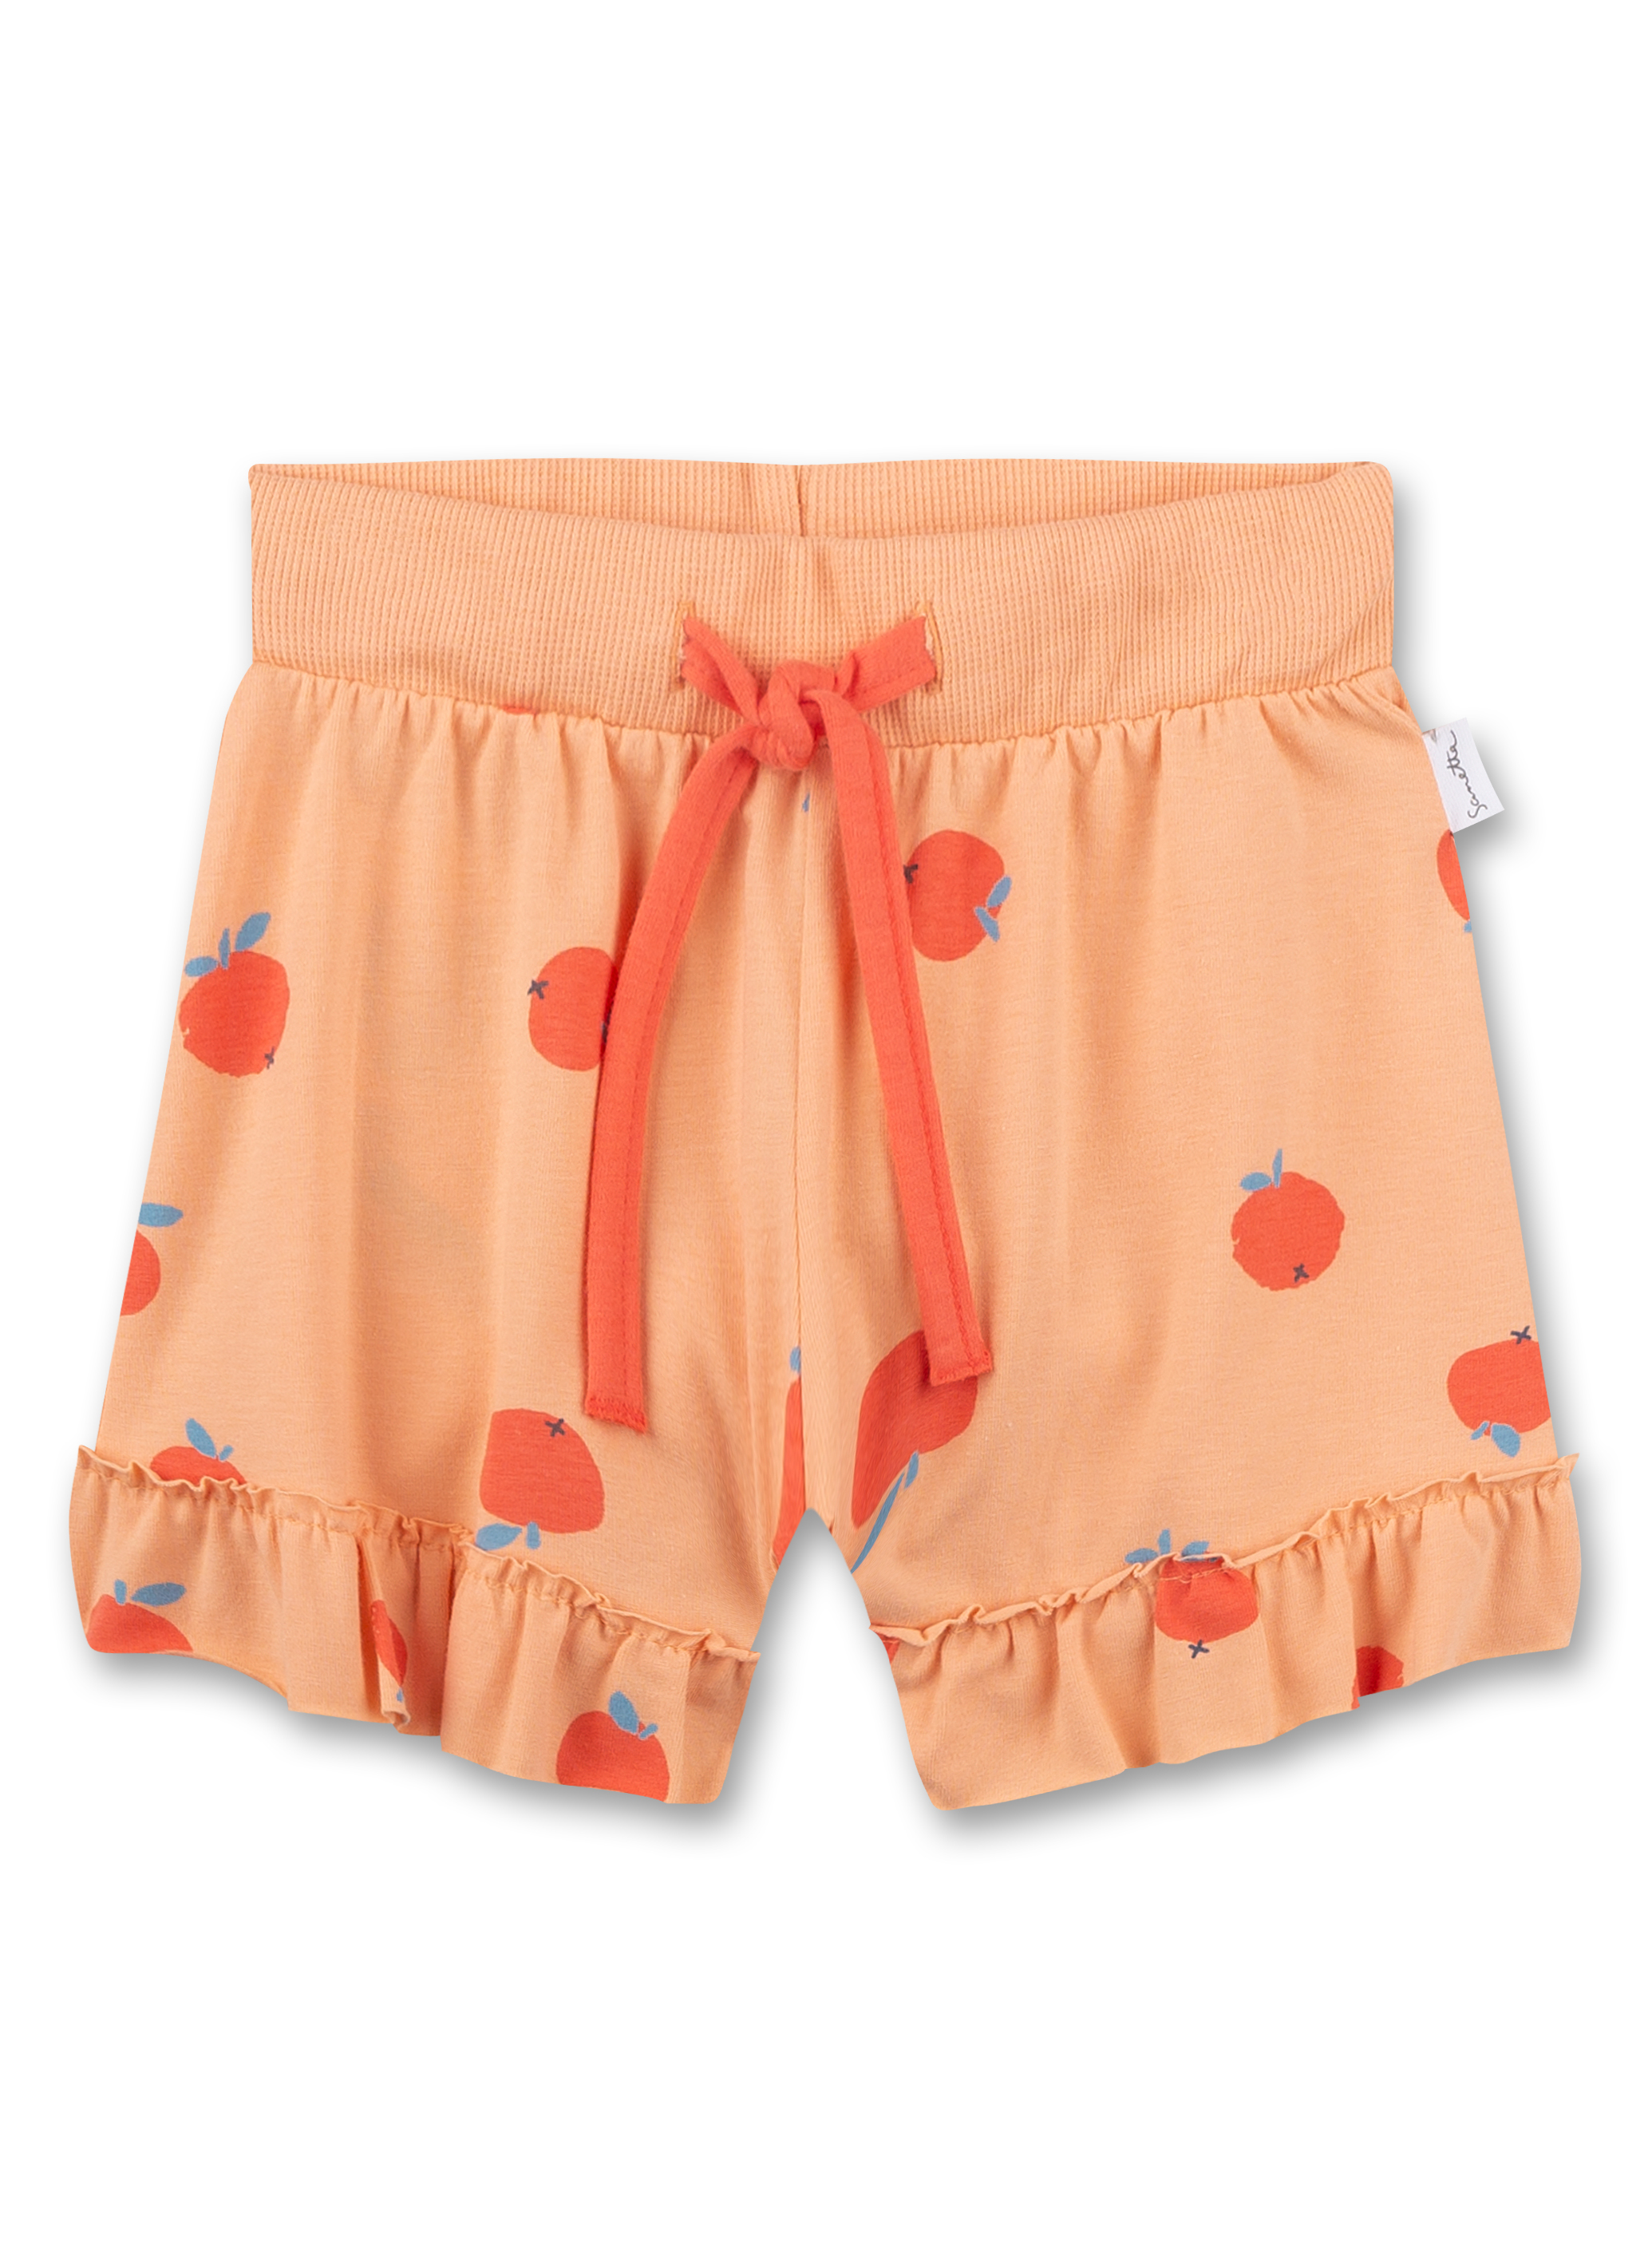 Mädchen-Shorts Orange